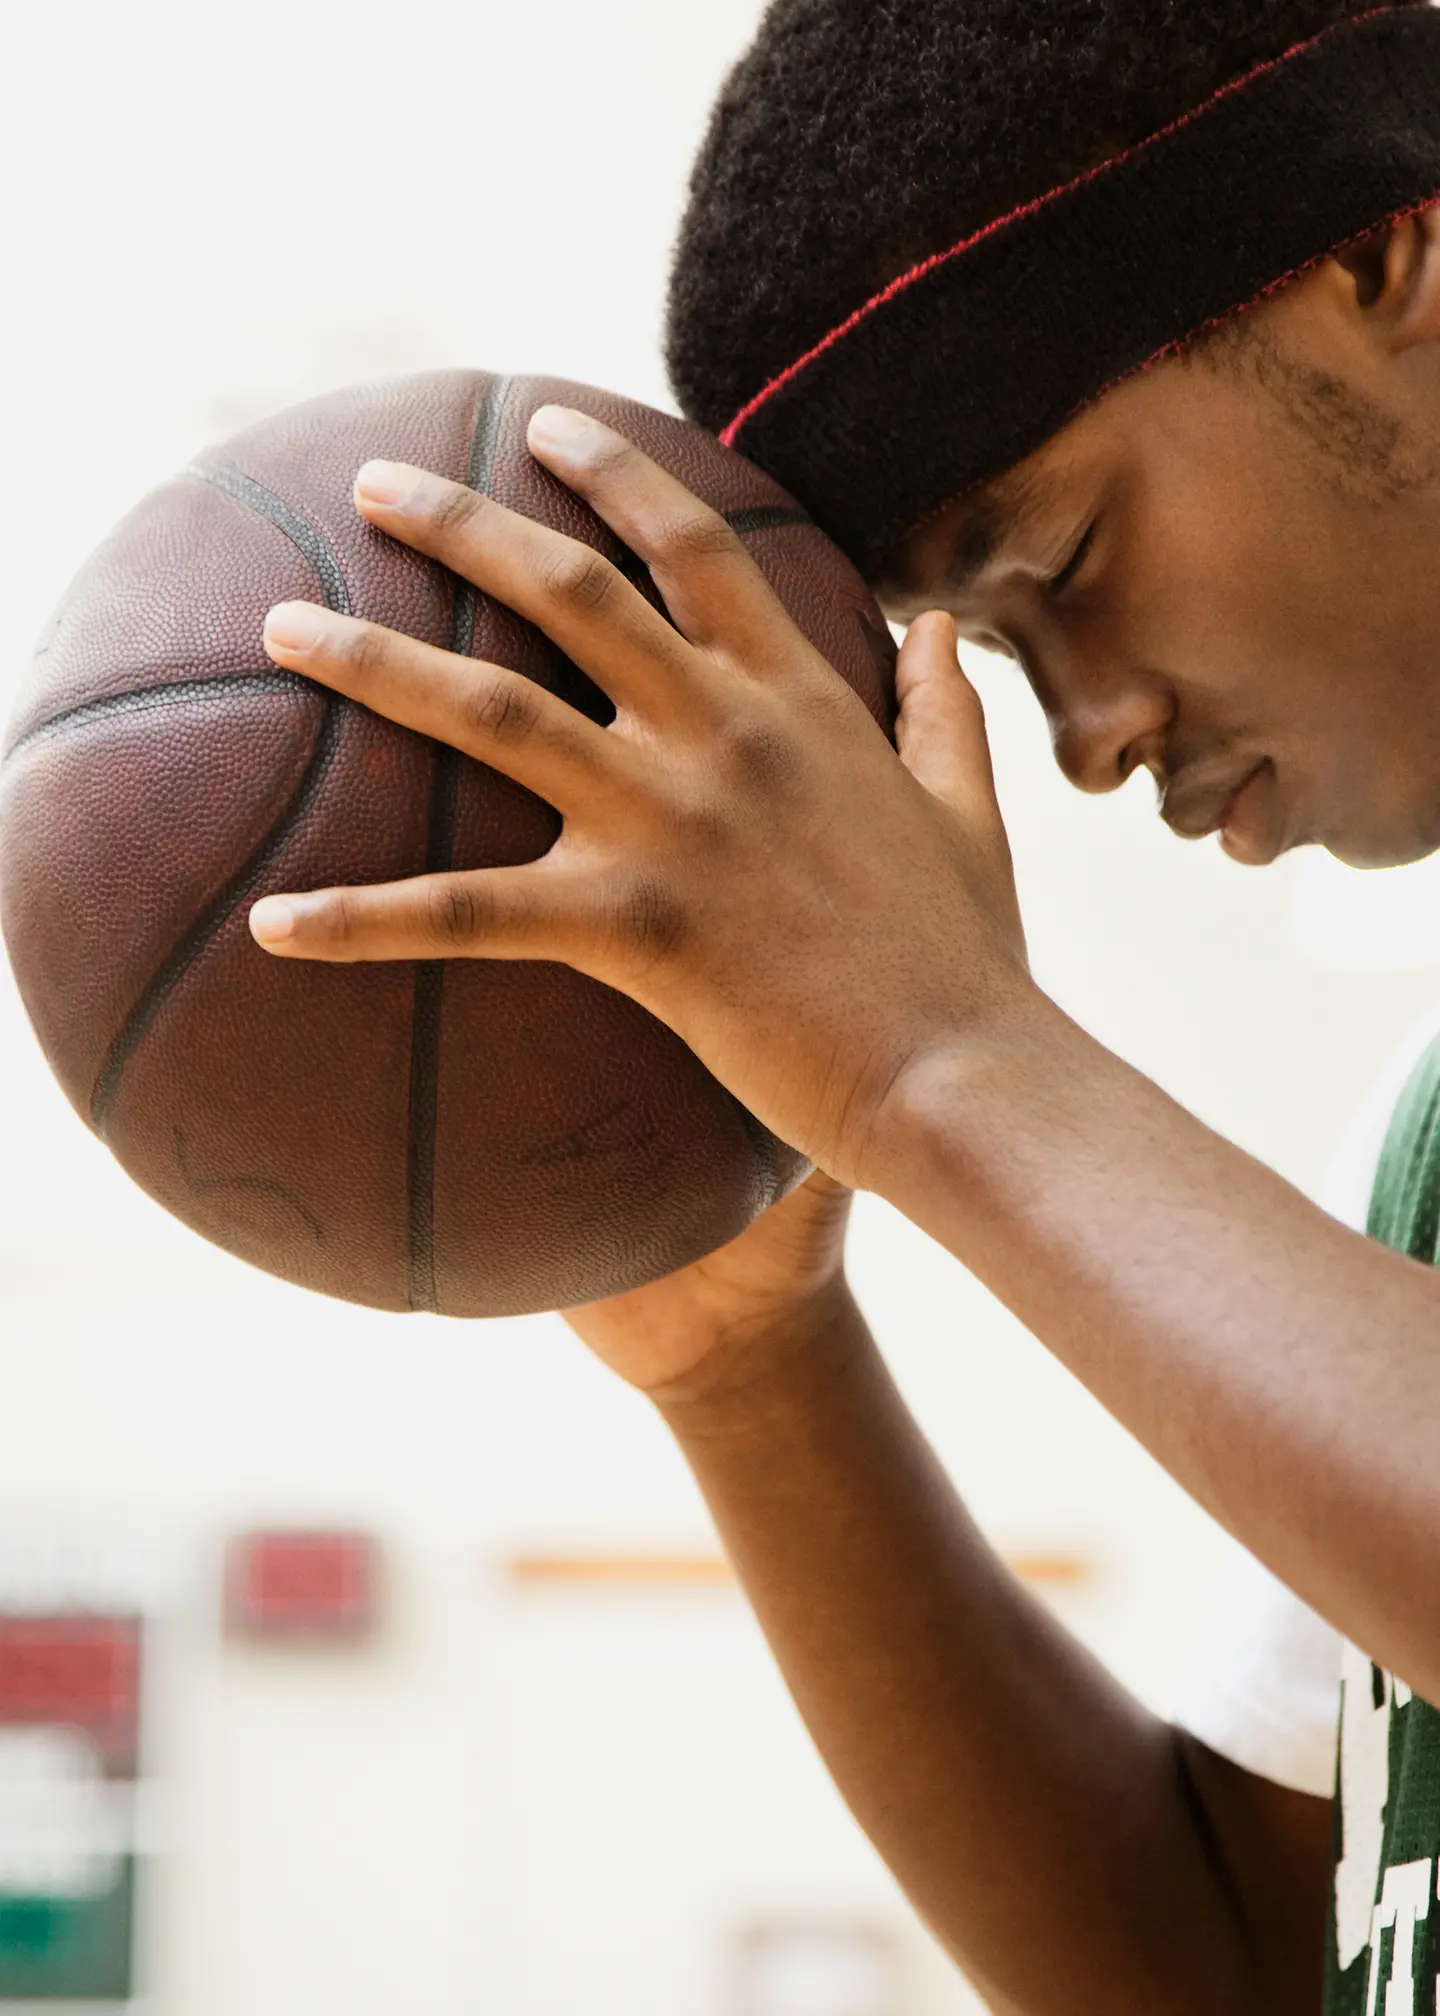 Ein junger Mann hält einen Basketball in den Händen